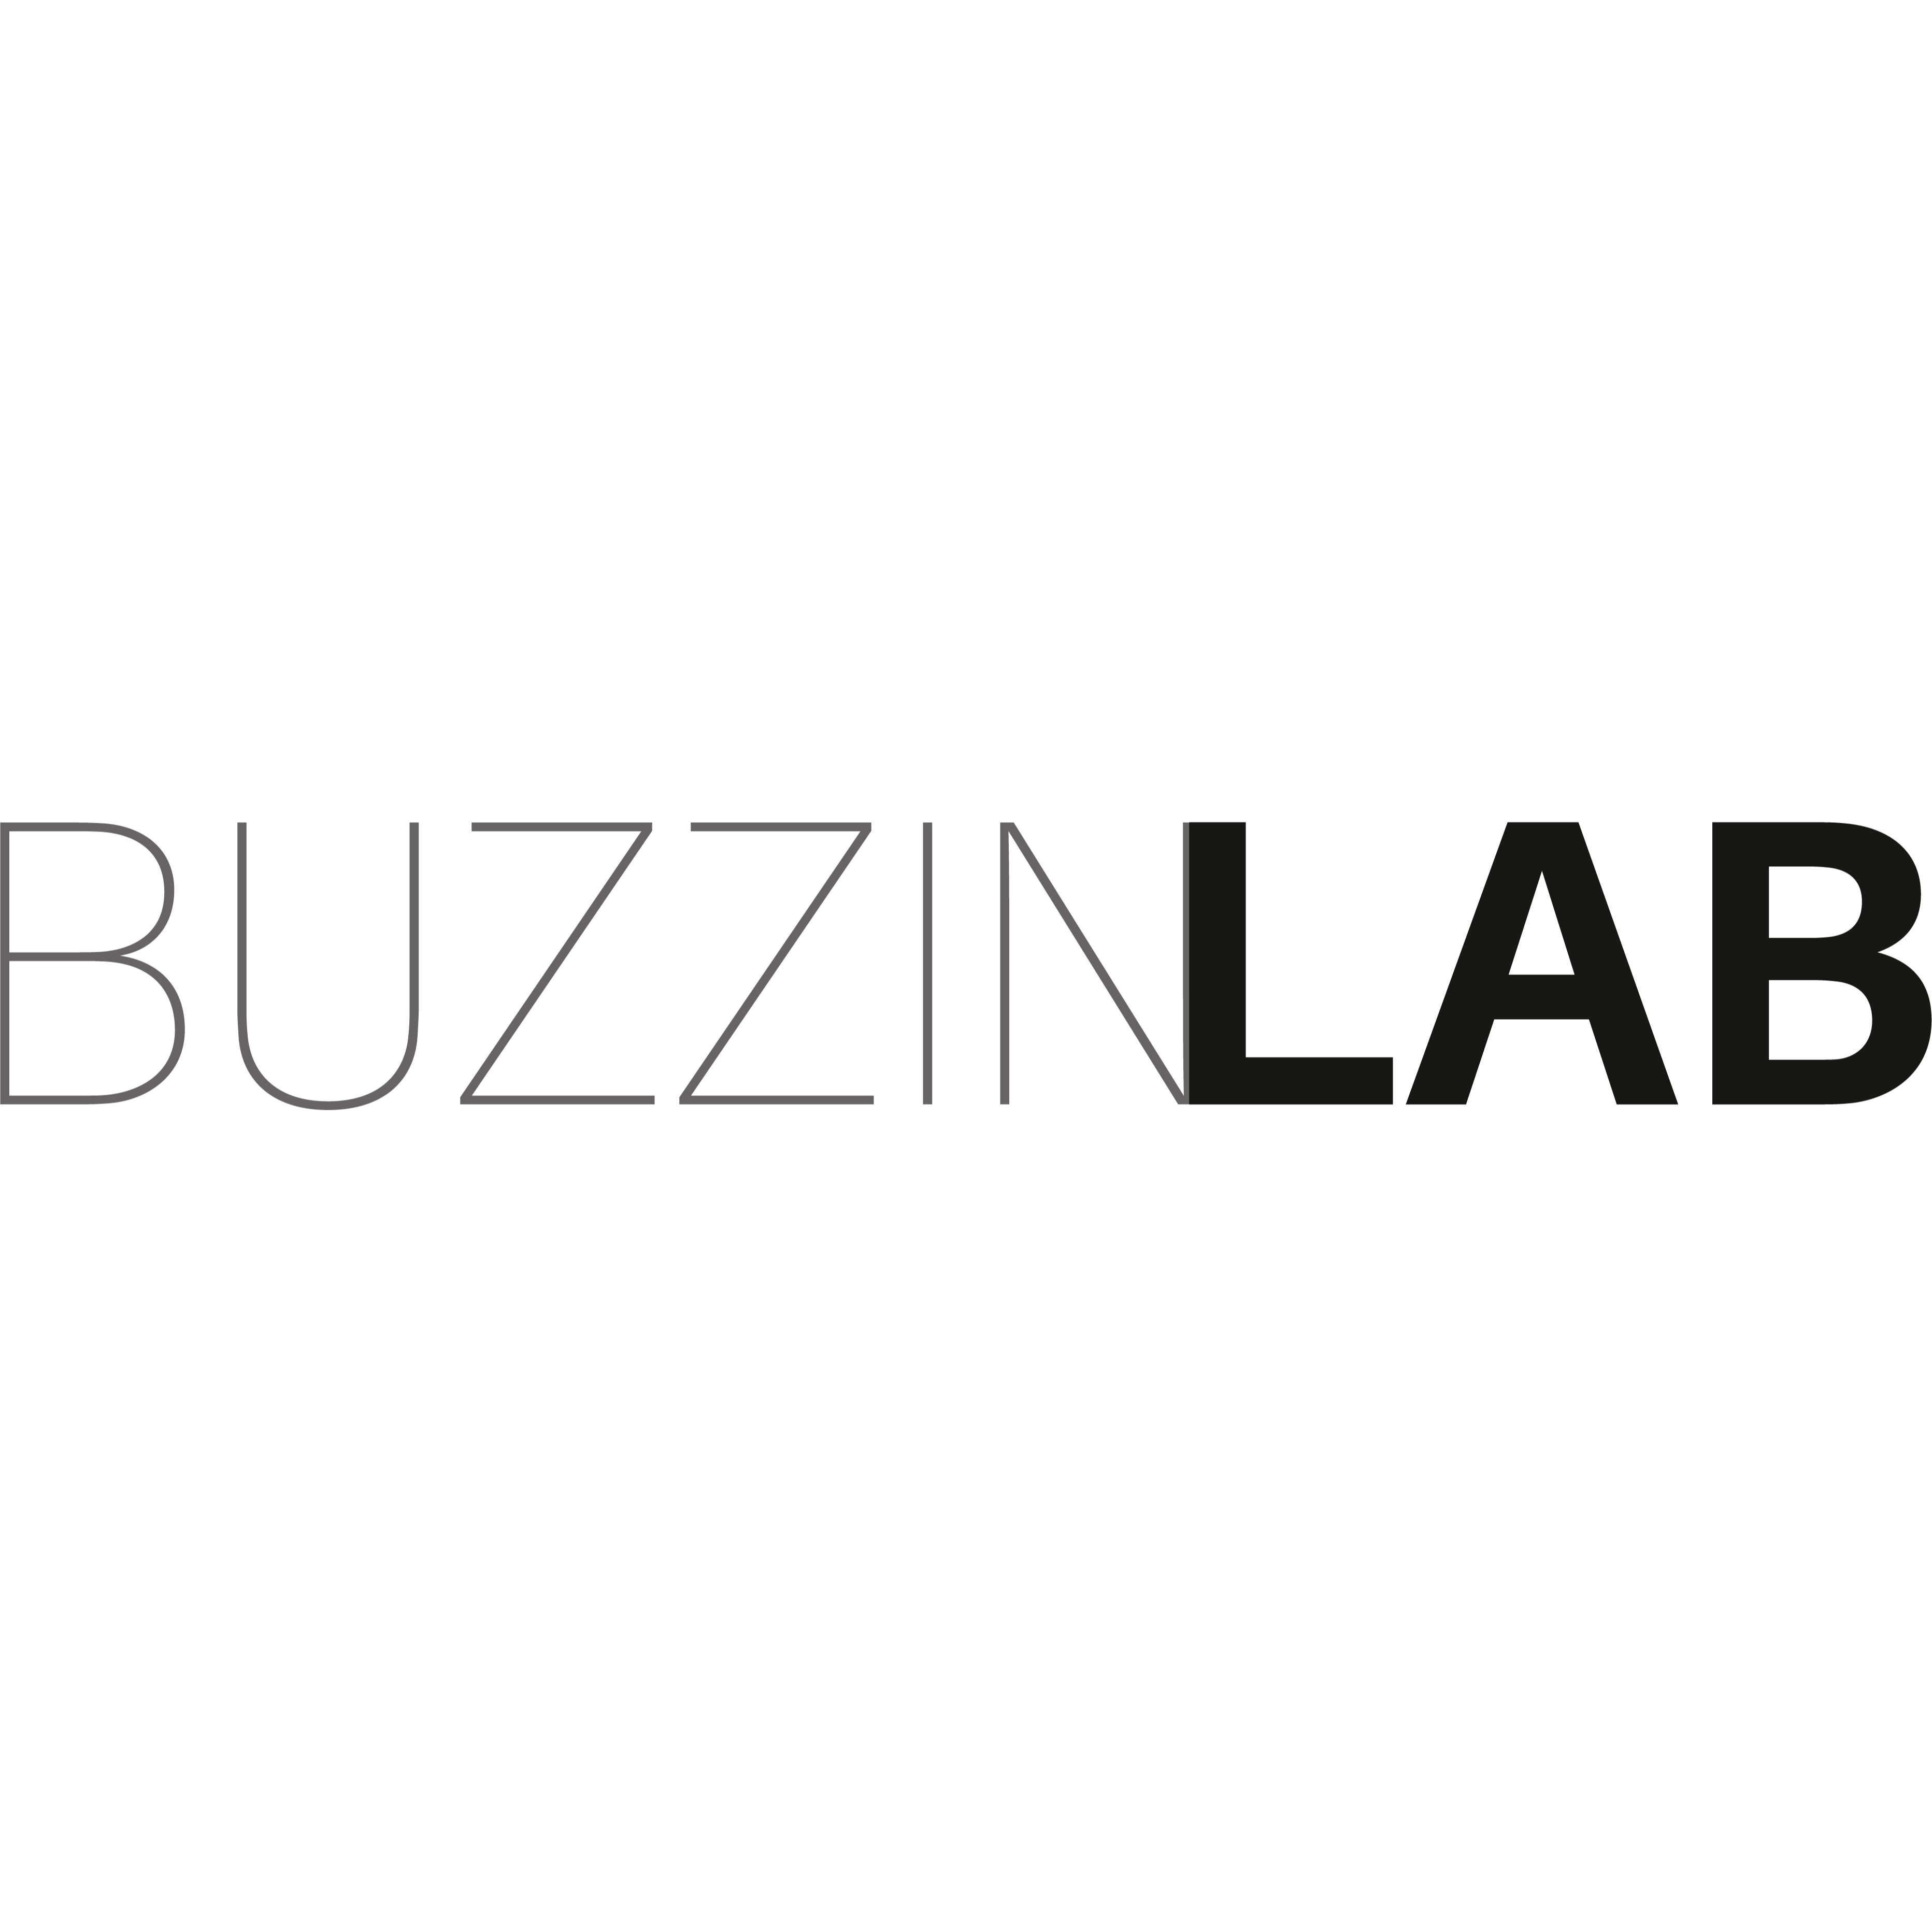 BUZZINLAB - The Club Office & Eventlocation in Stuttgart - Logo